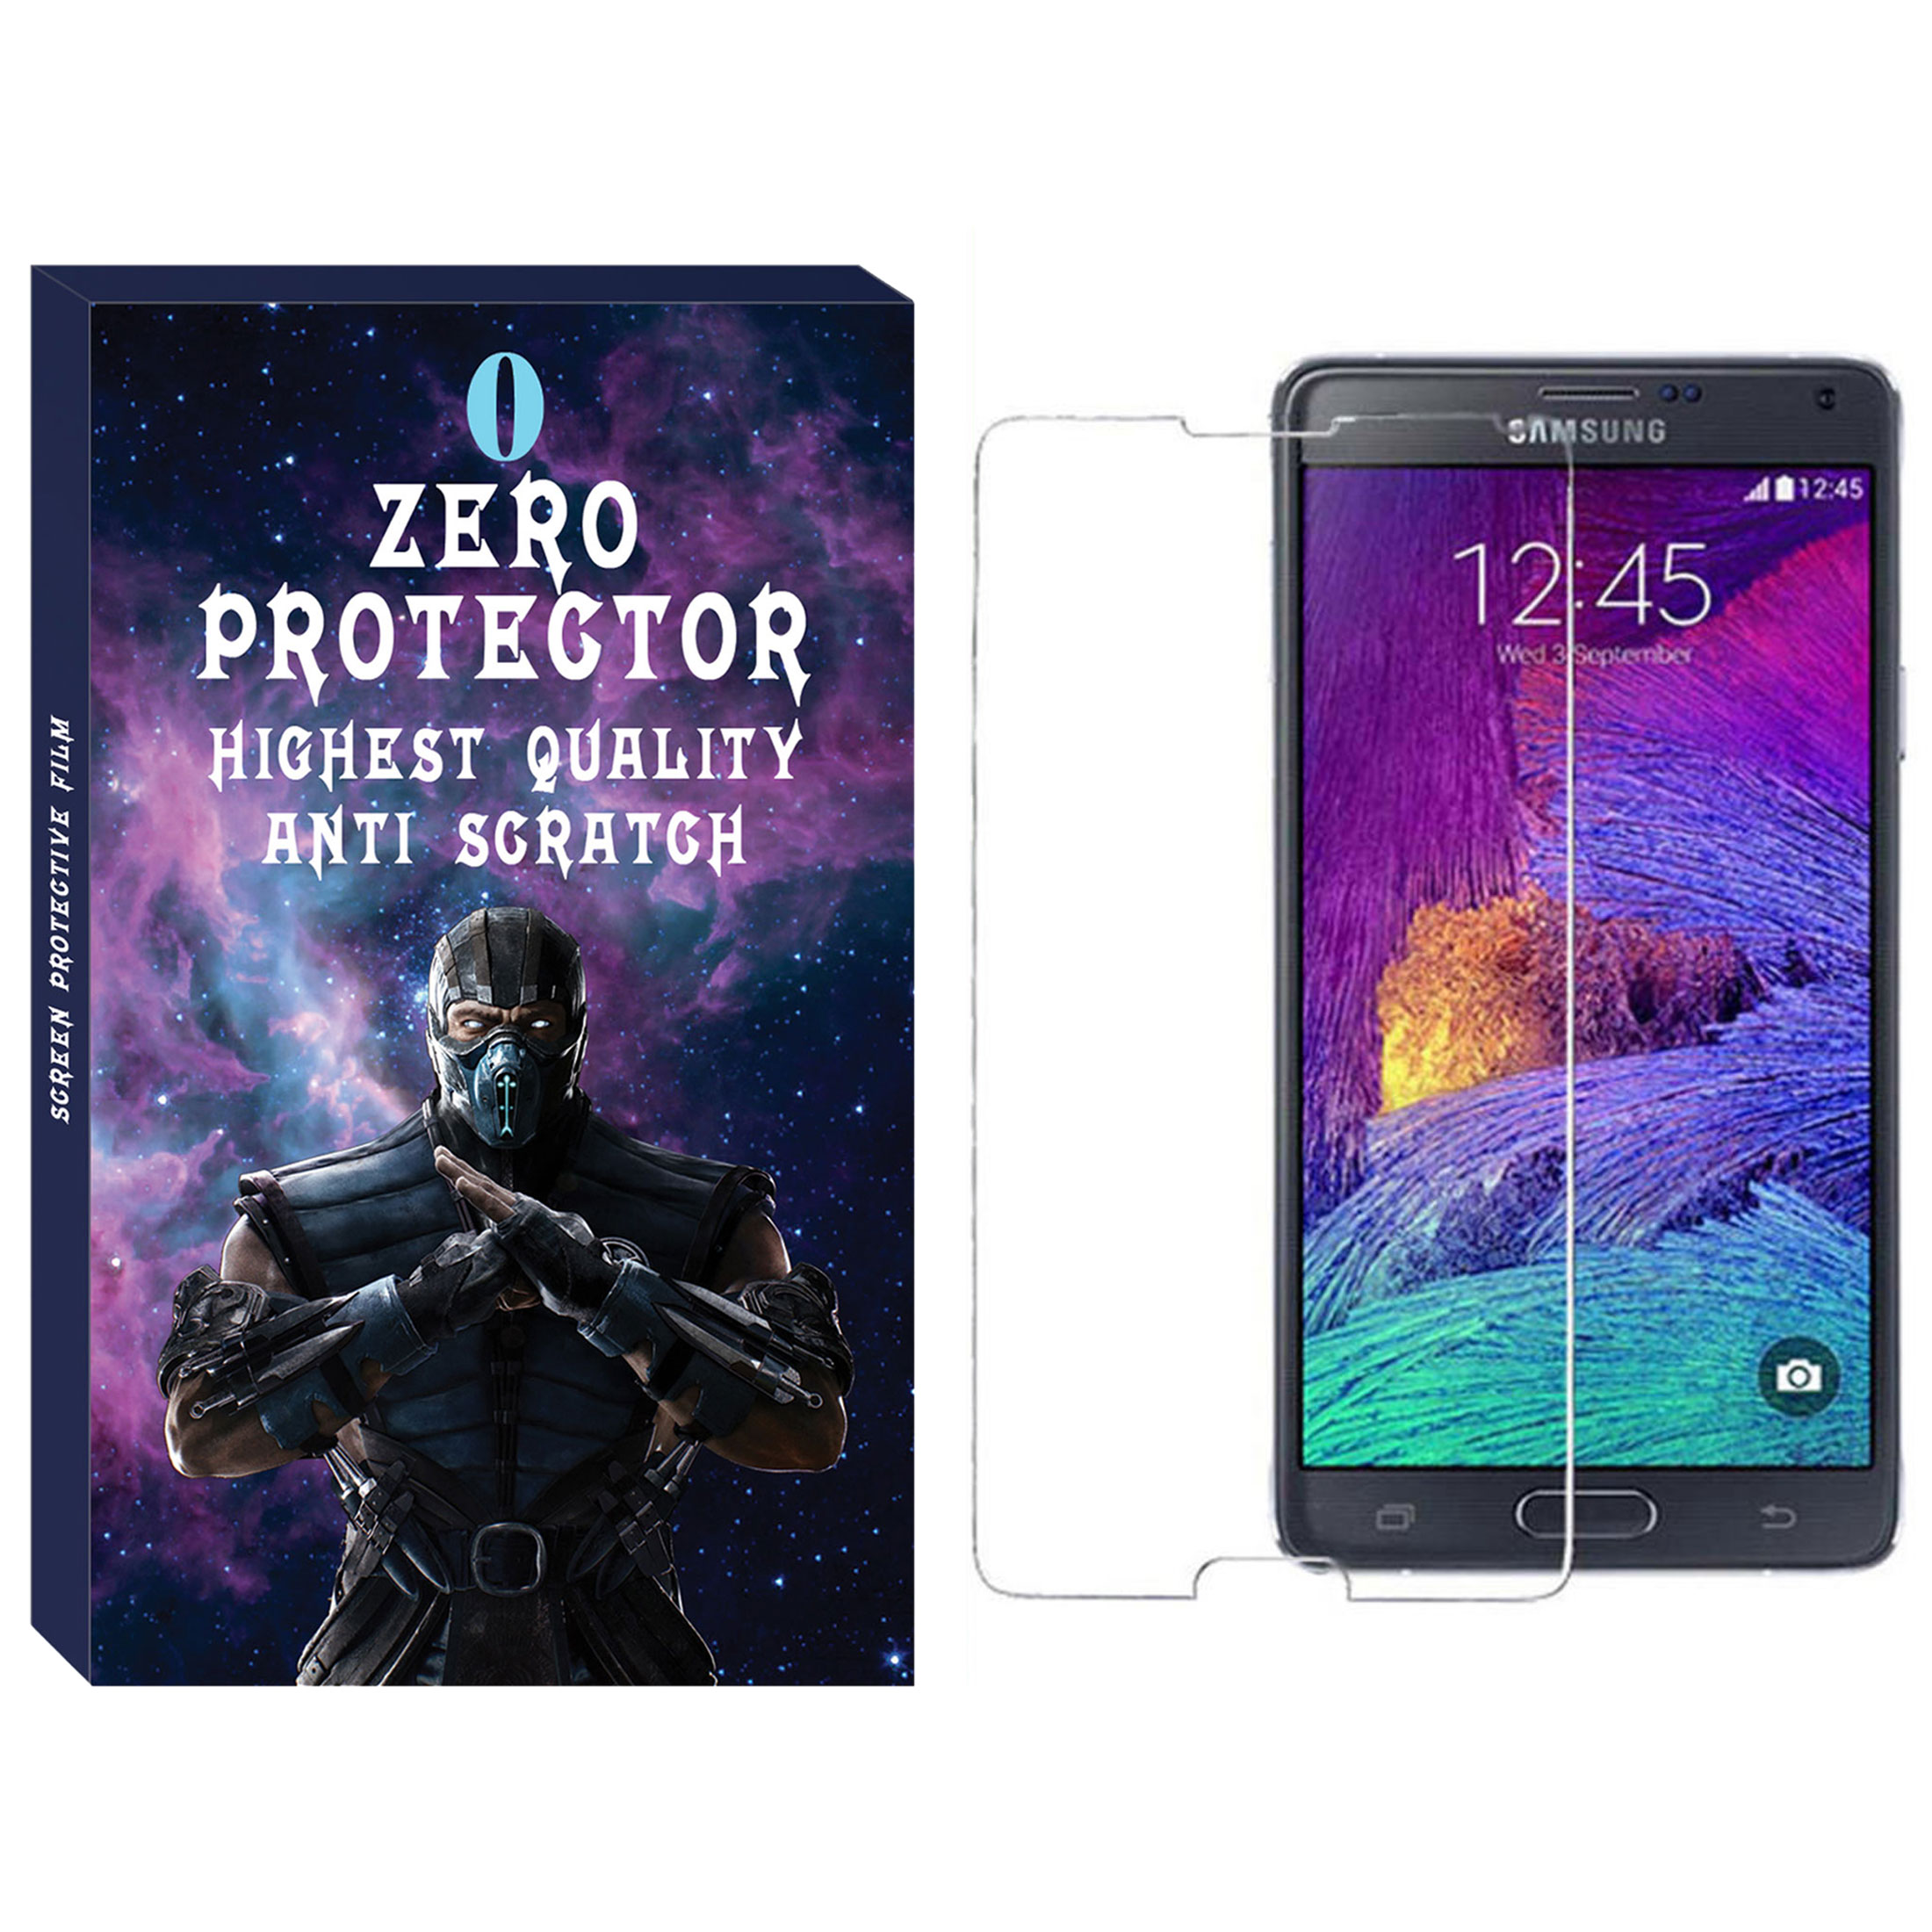 آنباکس محافظ صفحه نمایش زیرو مدل SDZ-01 مناسب برای گوشی موبایل سامسونگ Galaxy Note 4 توسط مهدی جعفری در تاریخ ۲۰ آبان ۱۳۹۹